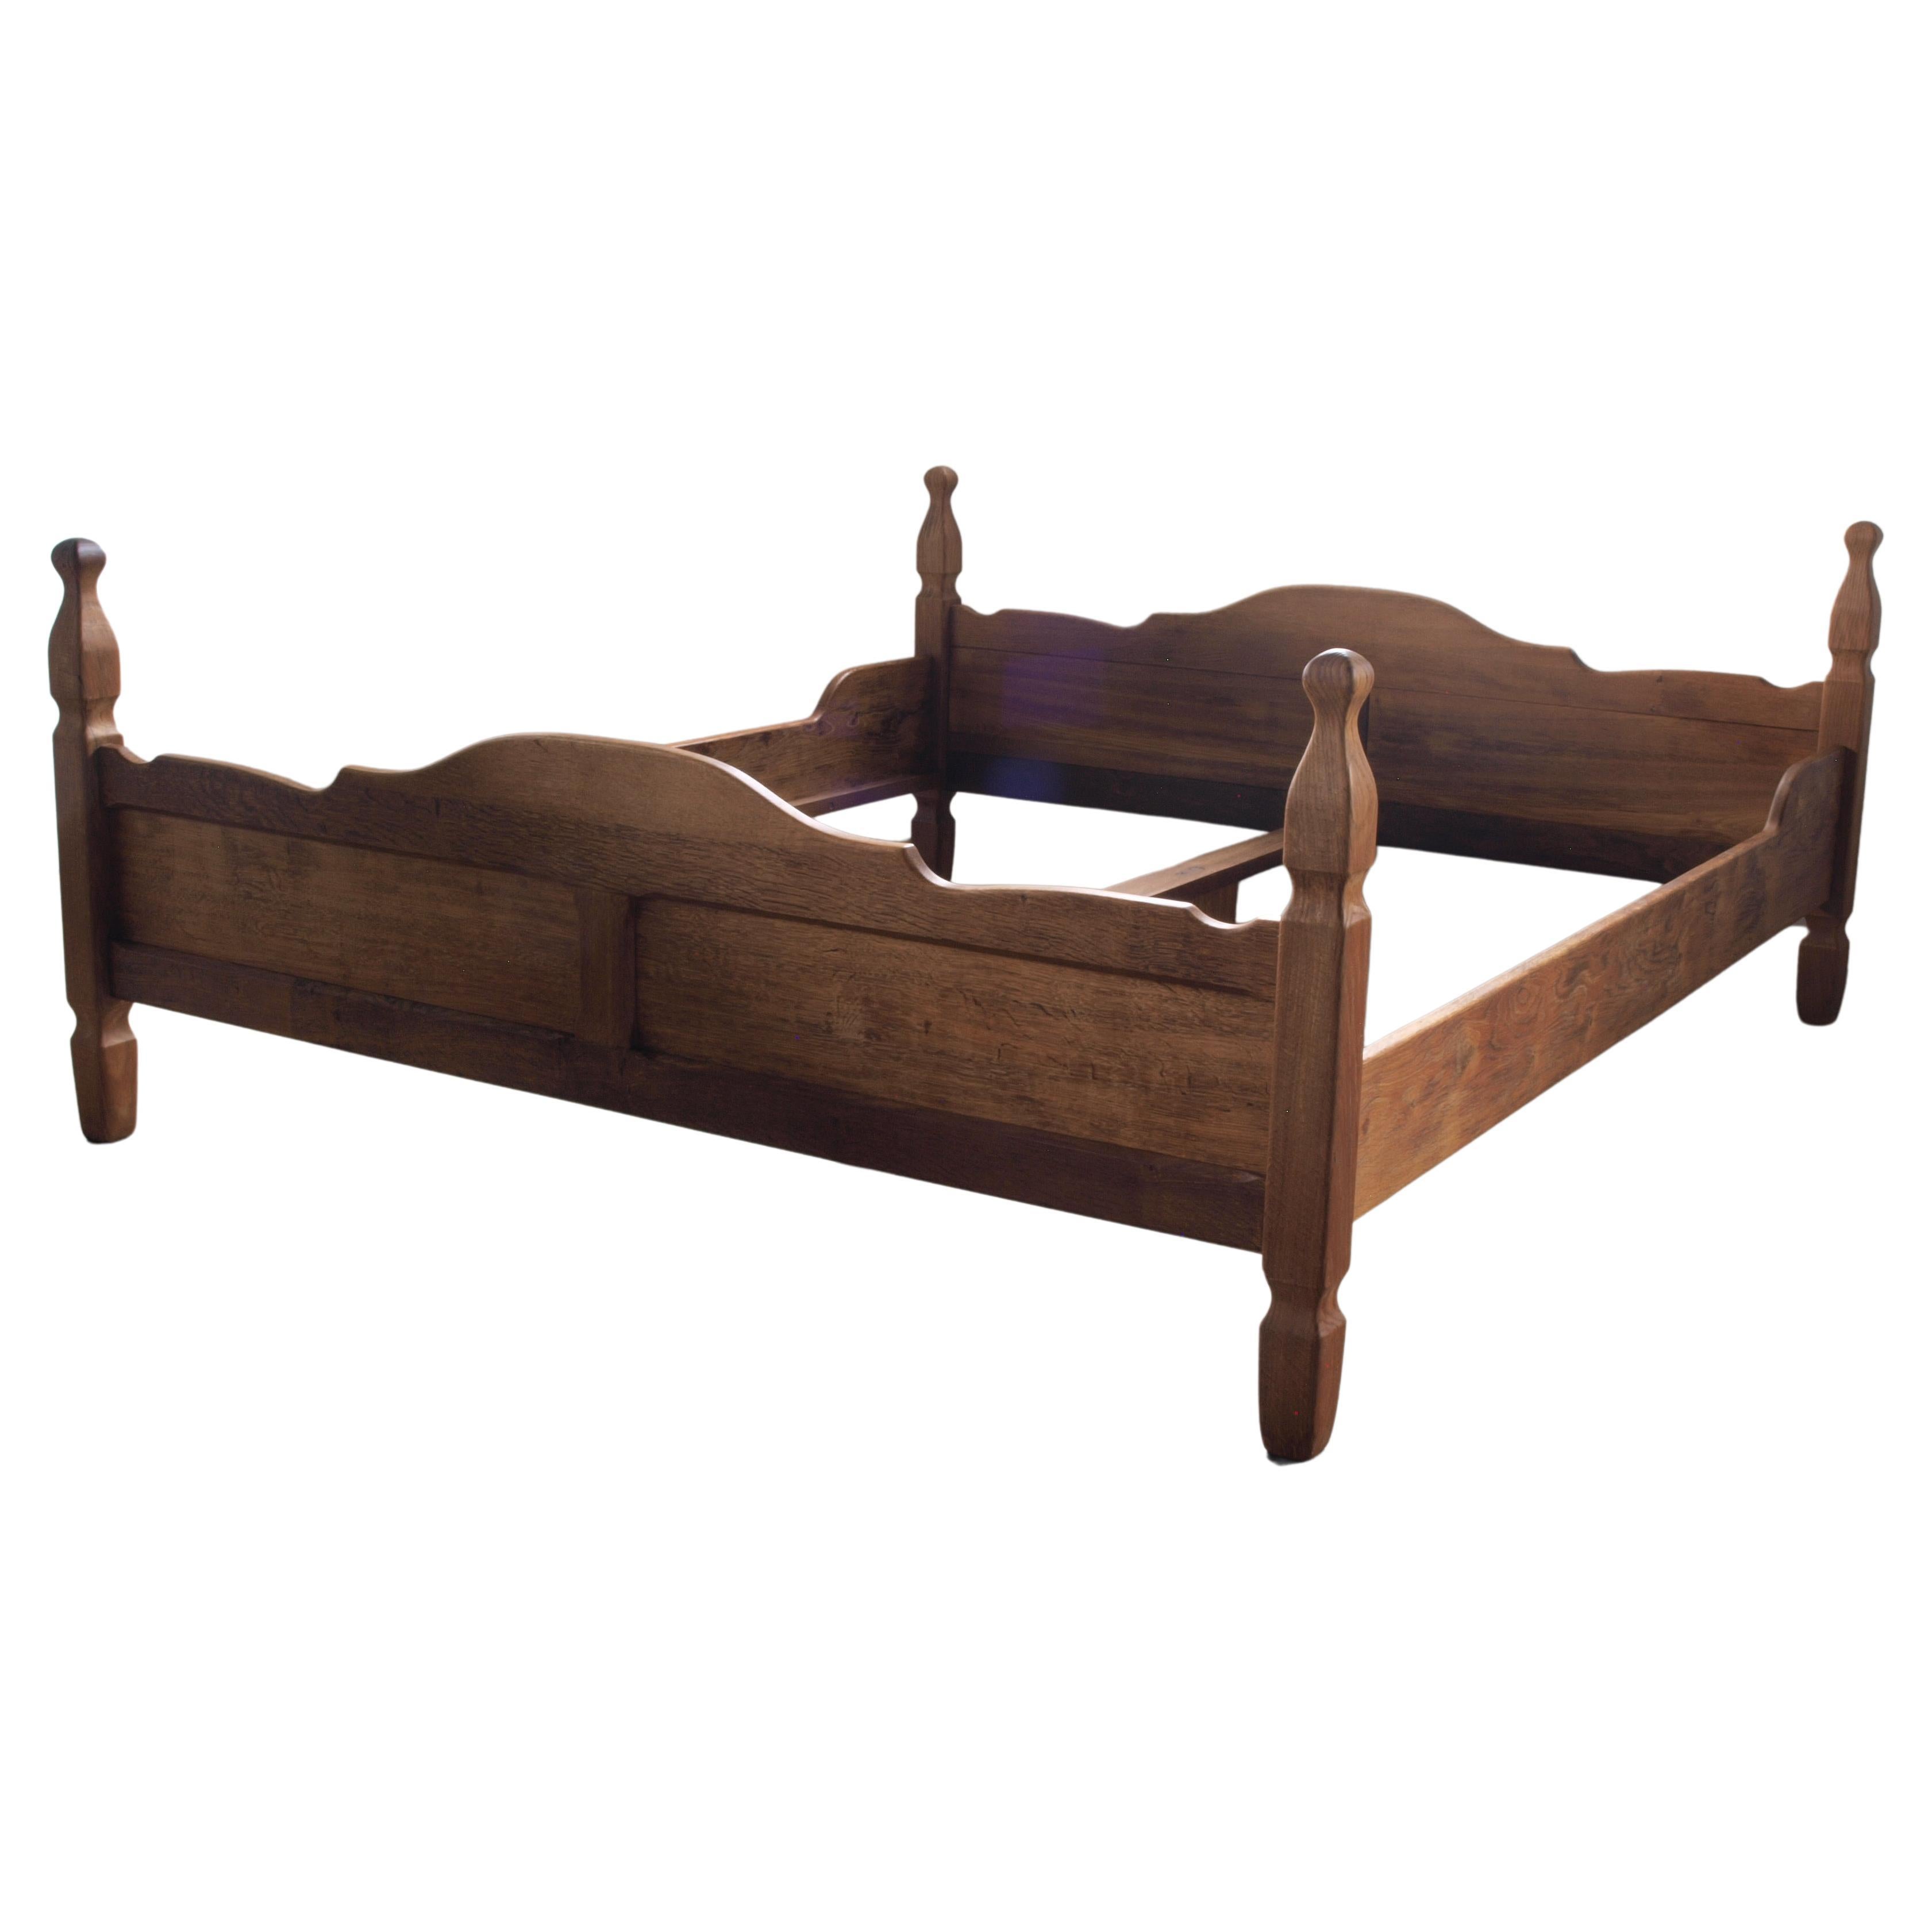 Danish Mid-Century Bed/Bedframe in Solid Oak in style of Henning Kjærnulf